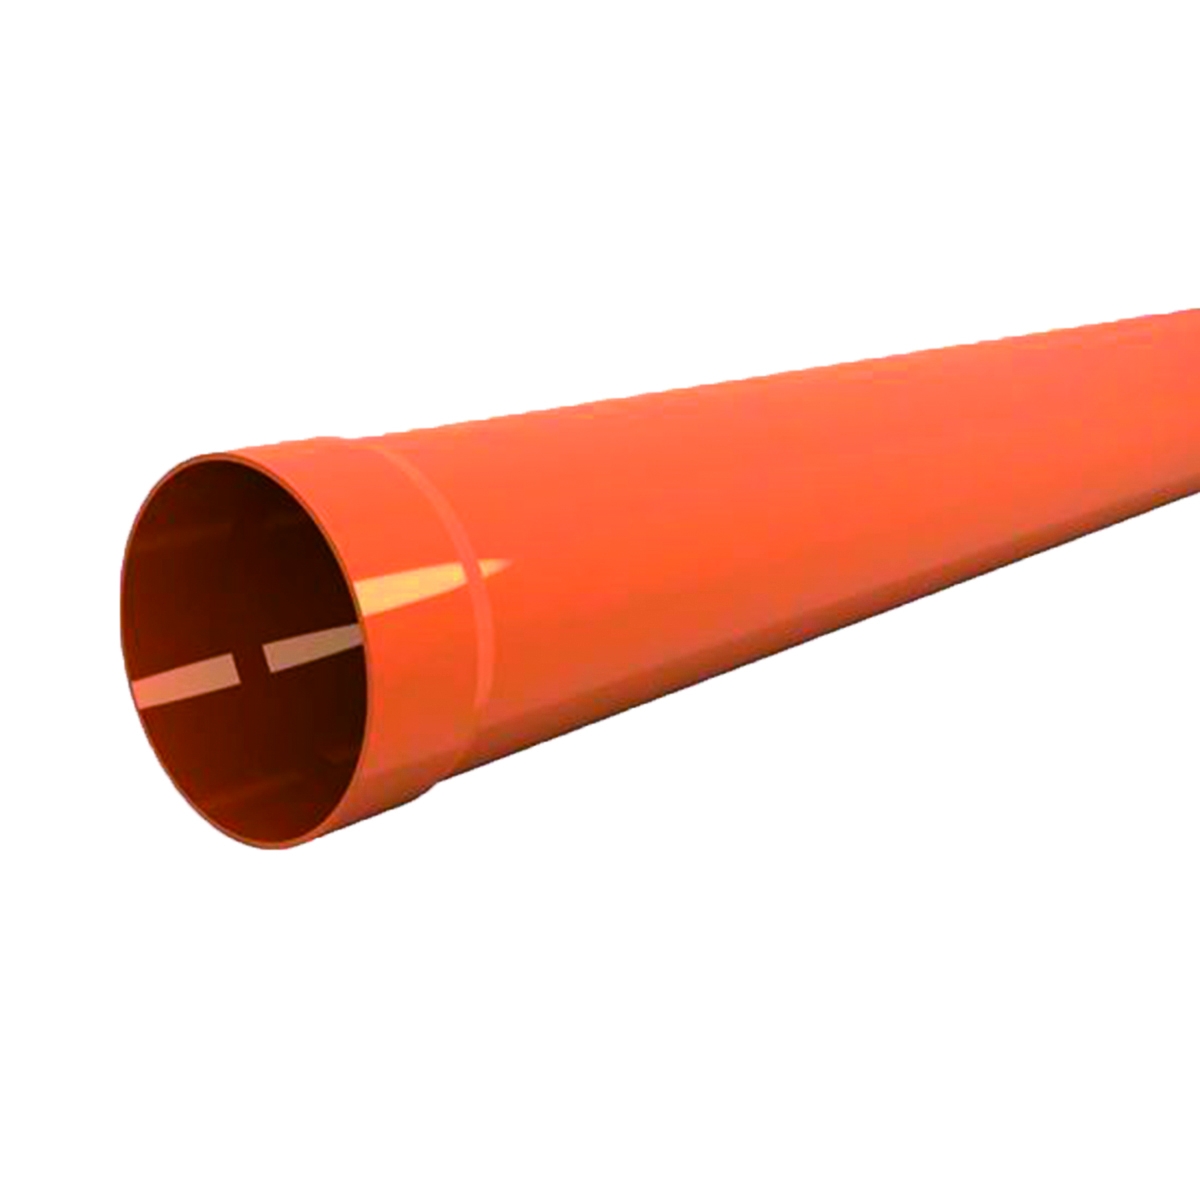 Tubo per evacuazione acqua arancio in pvc Ø 100 mm L 2 m - 1